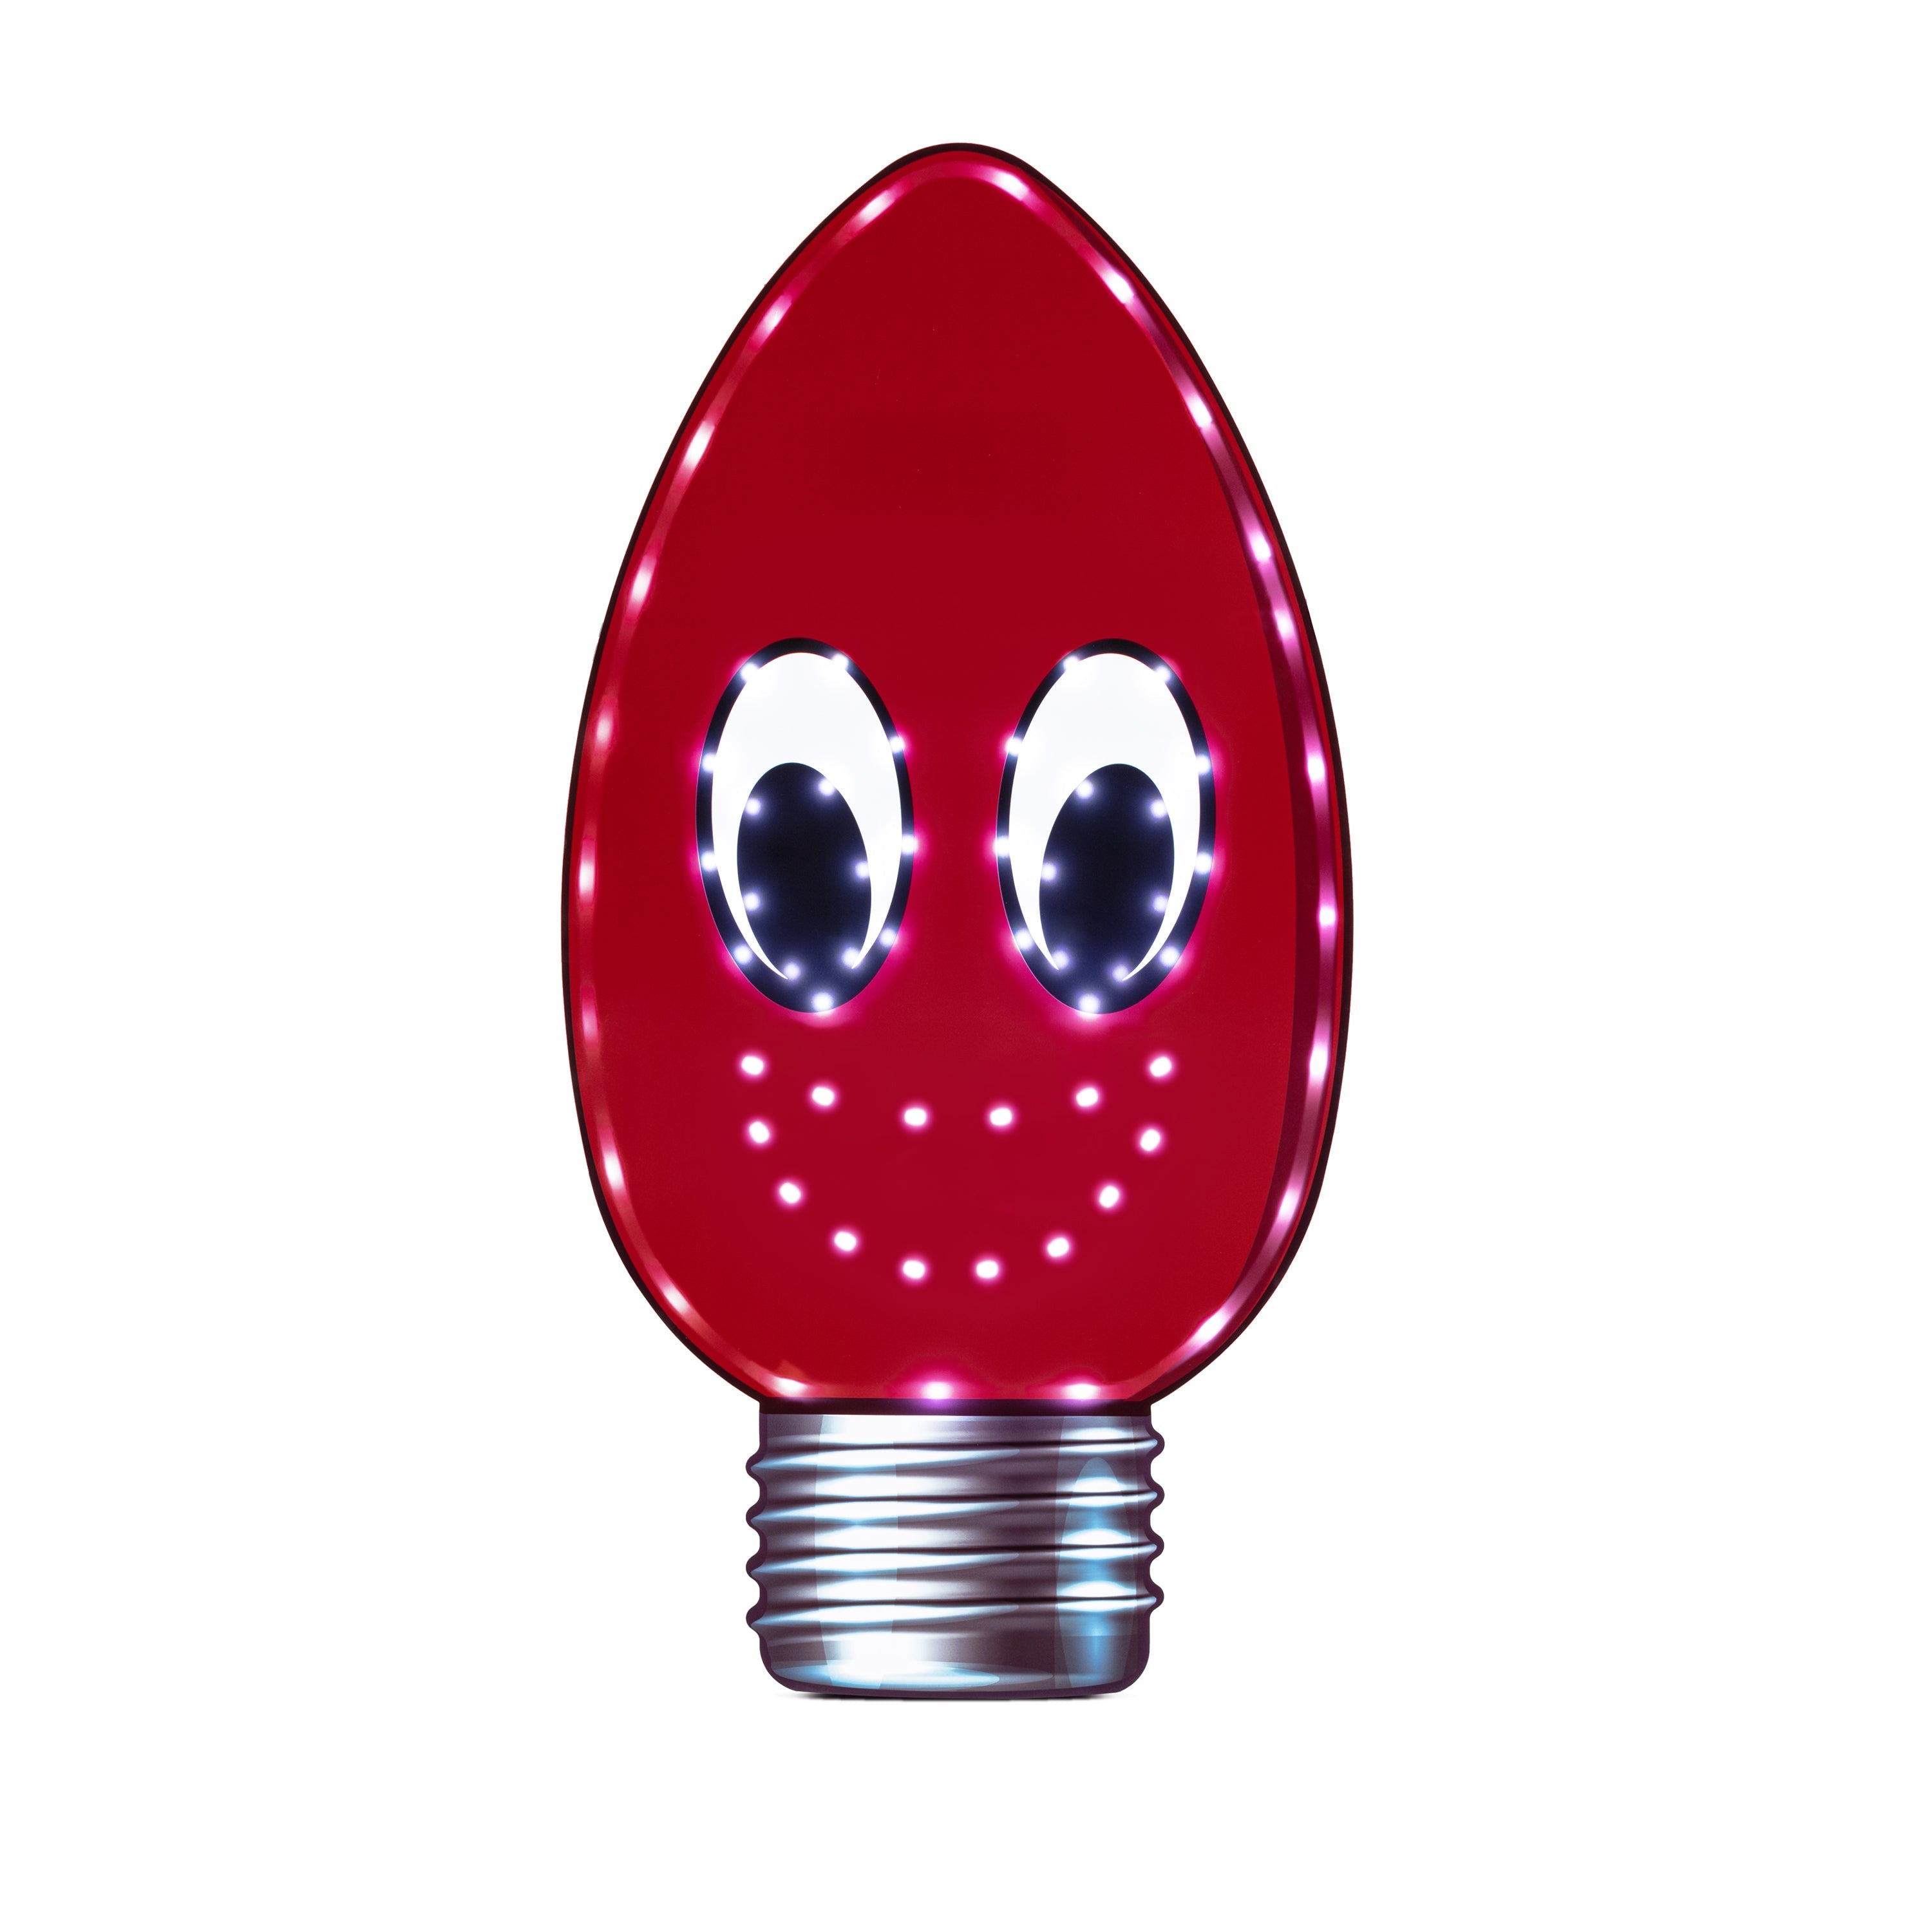 red light bulb